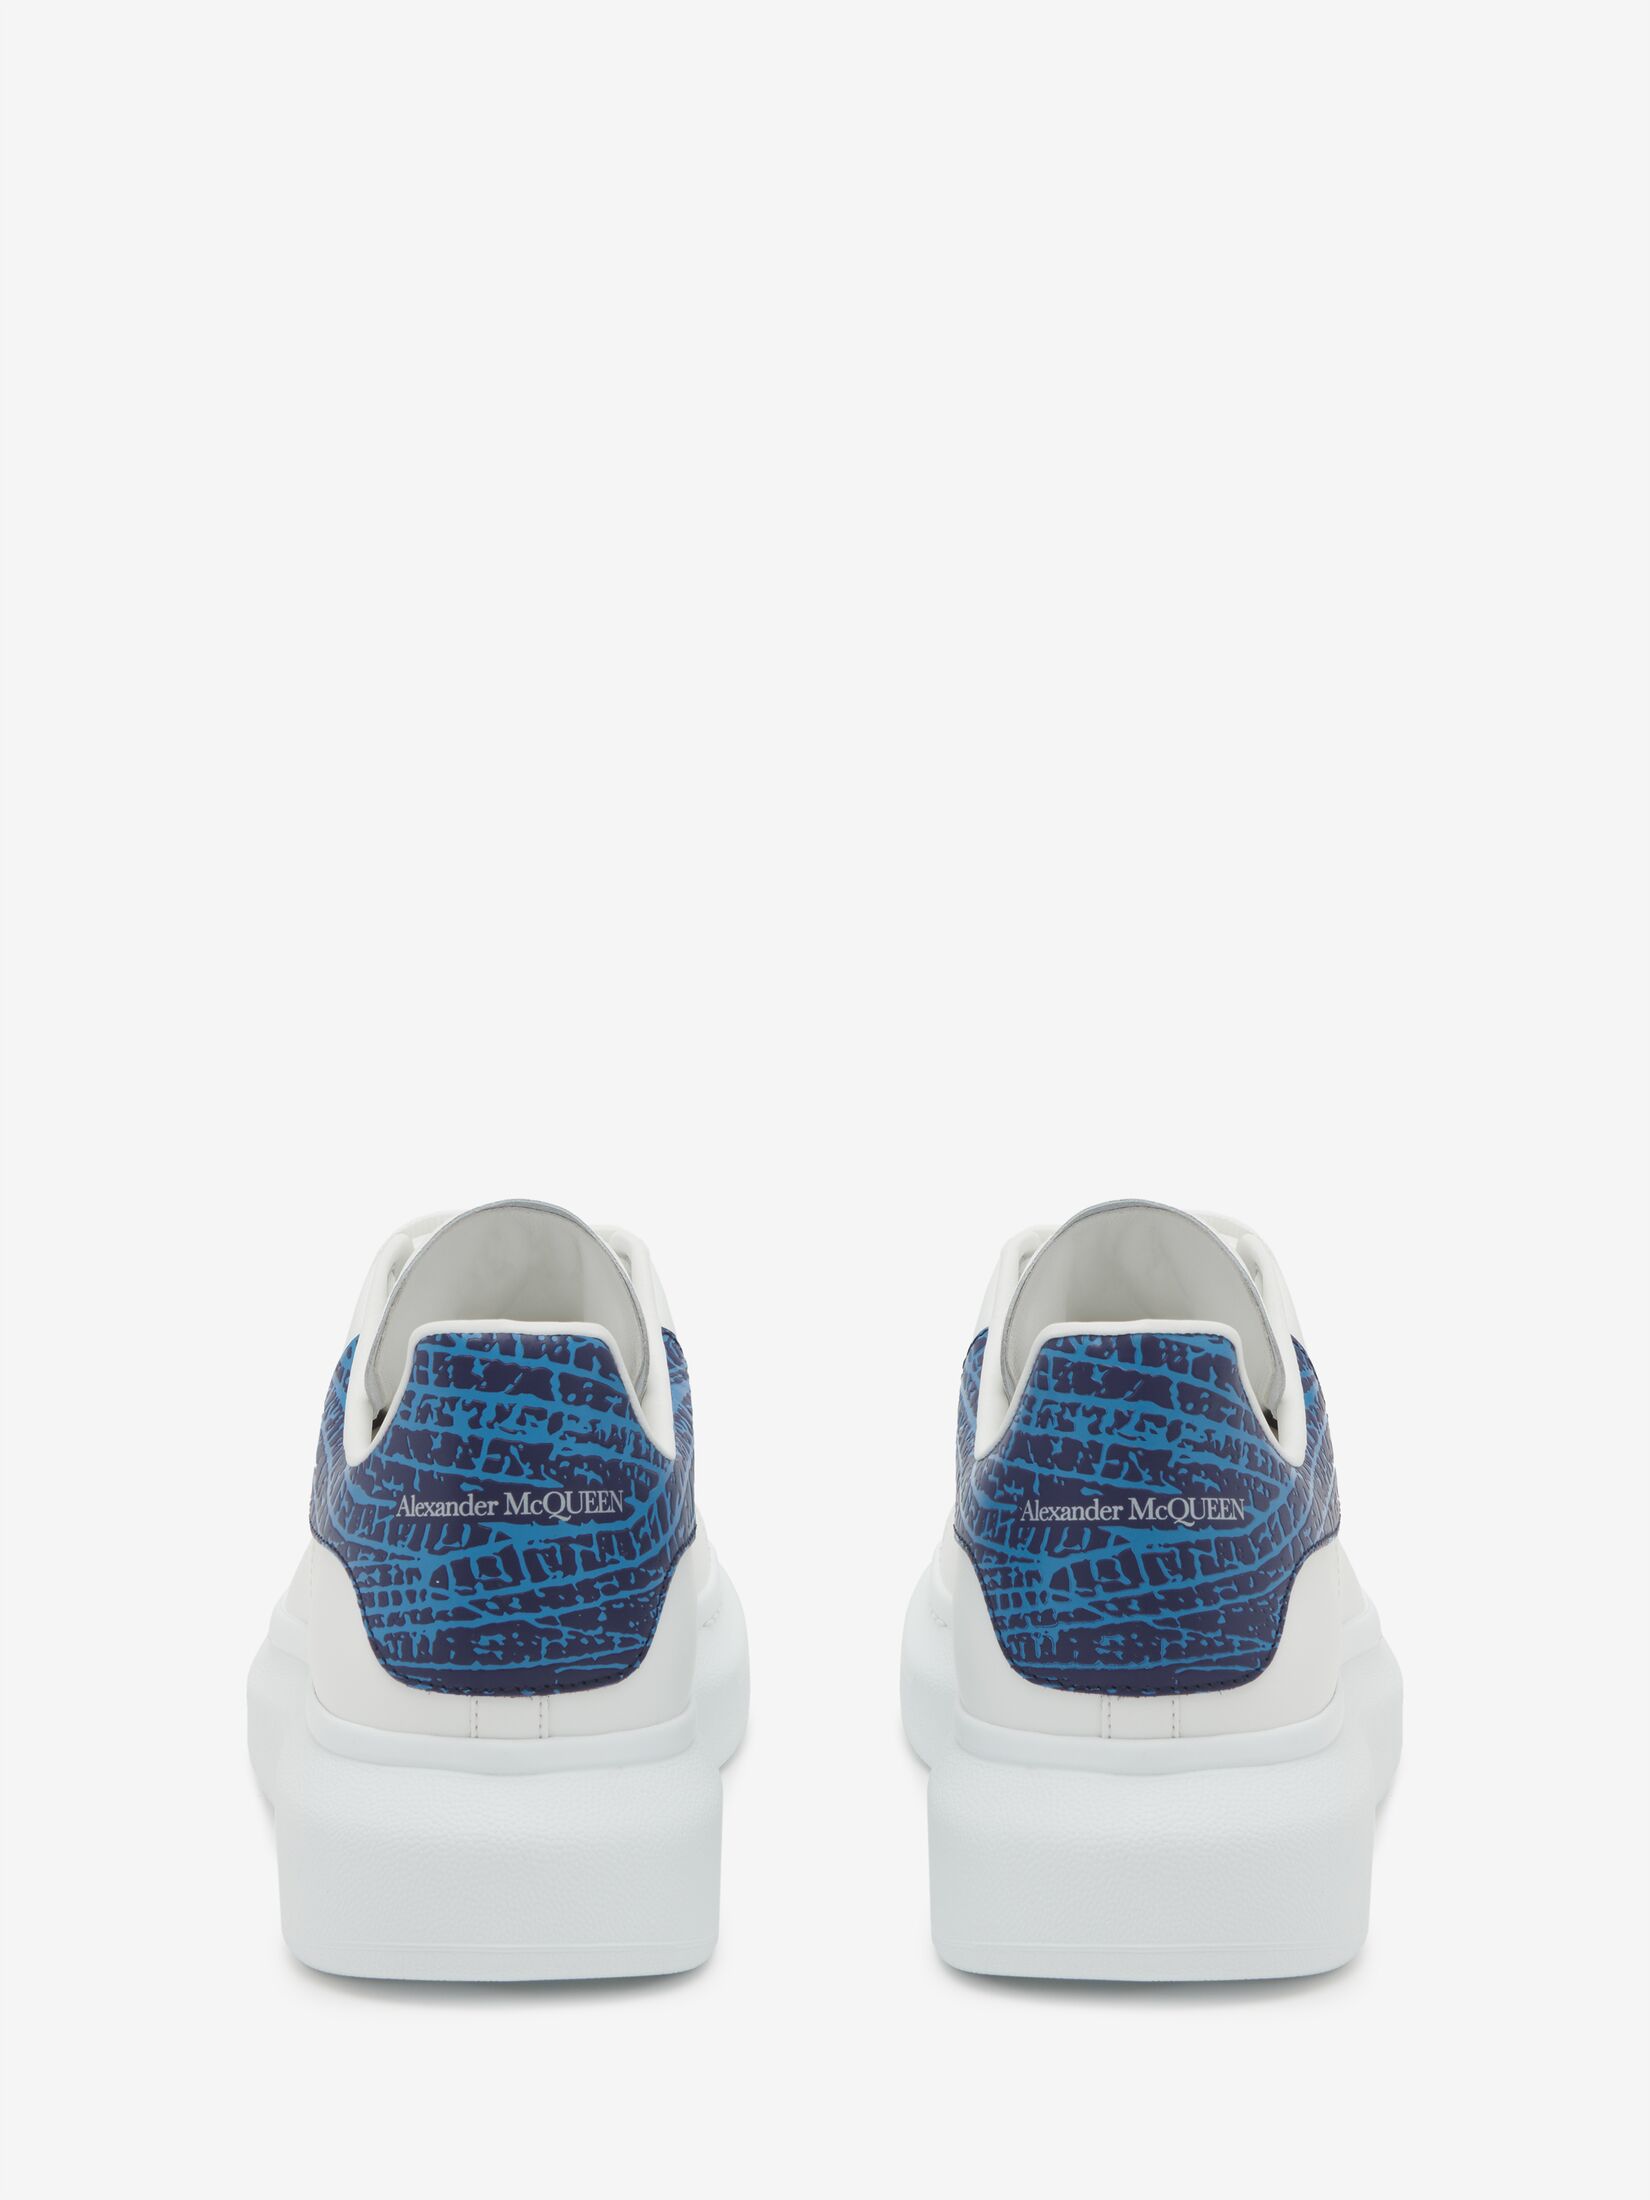 Brand-new Men's Alexander McQueen White/Iridescent Sneakers in  US11/UK10/EU44 | eBay